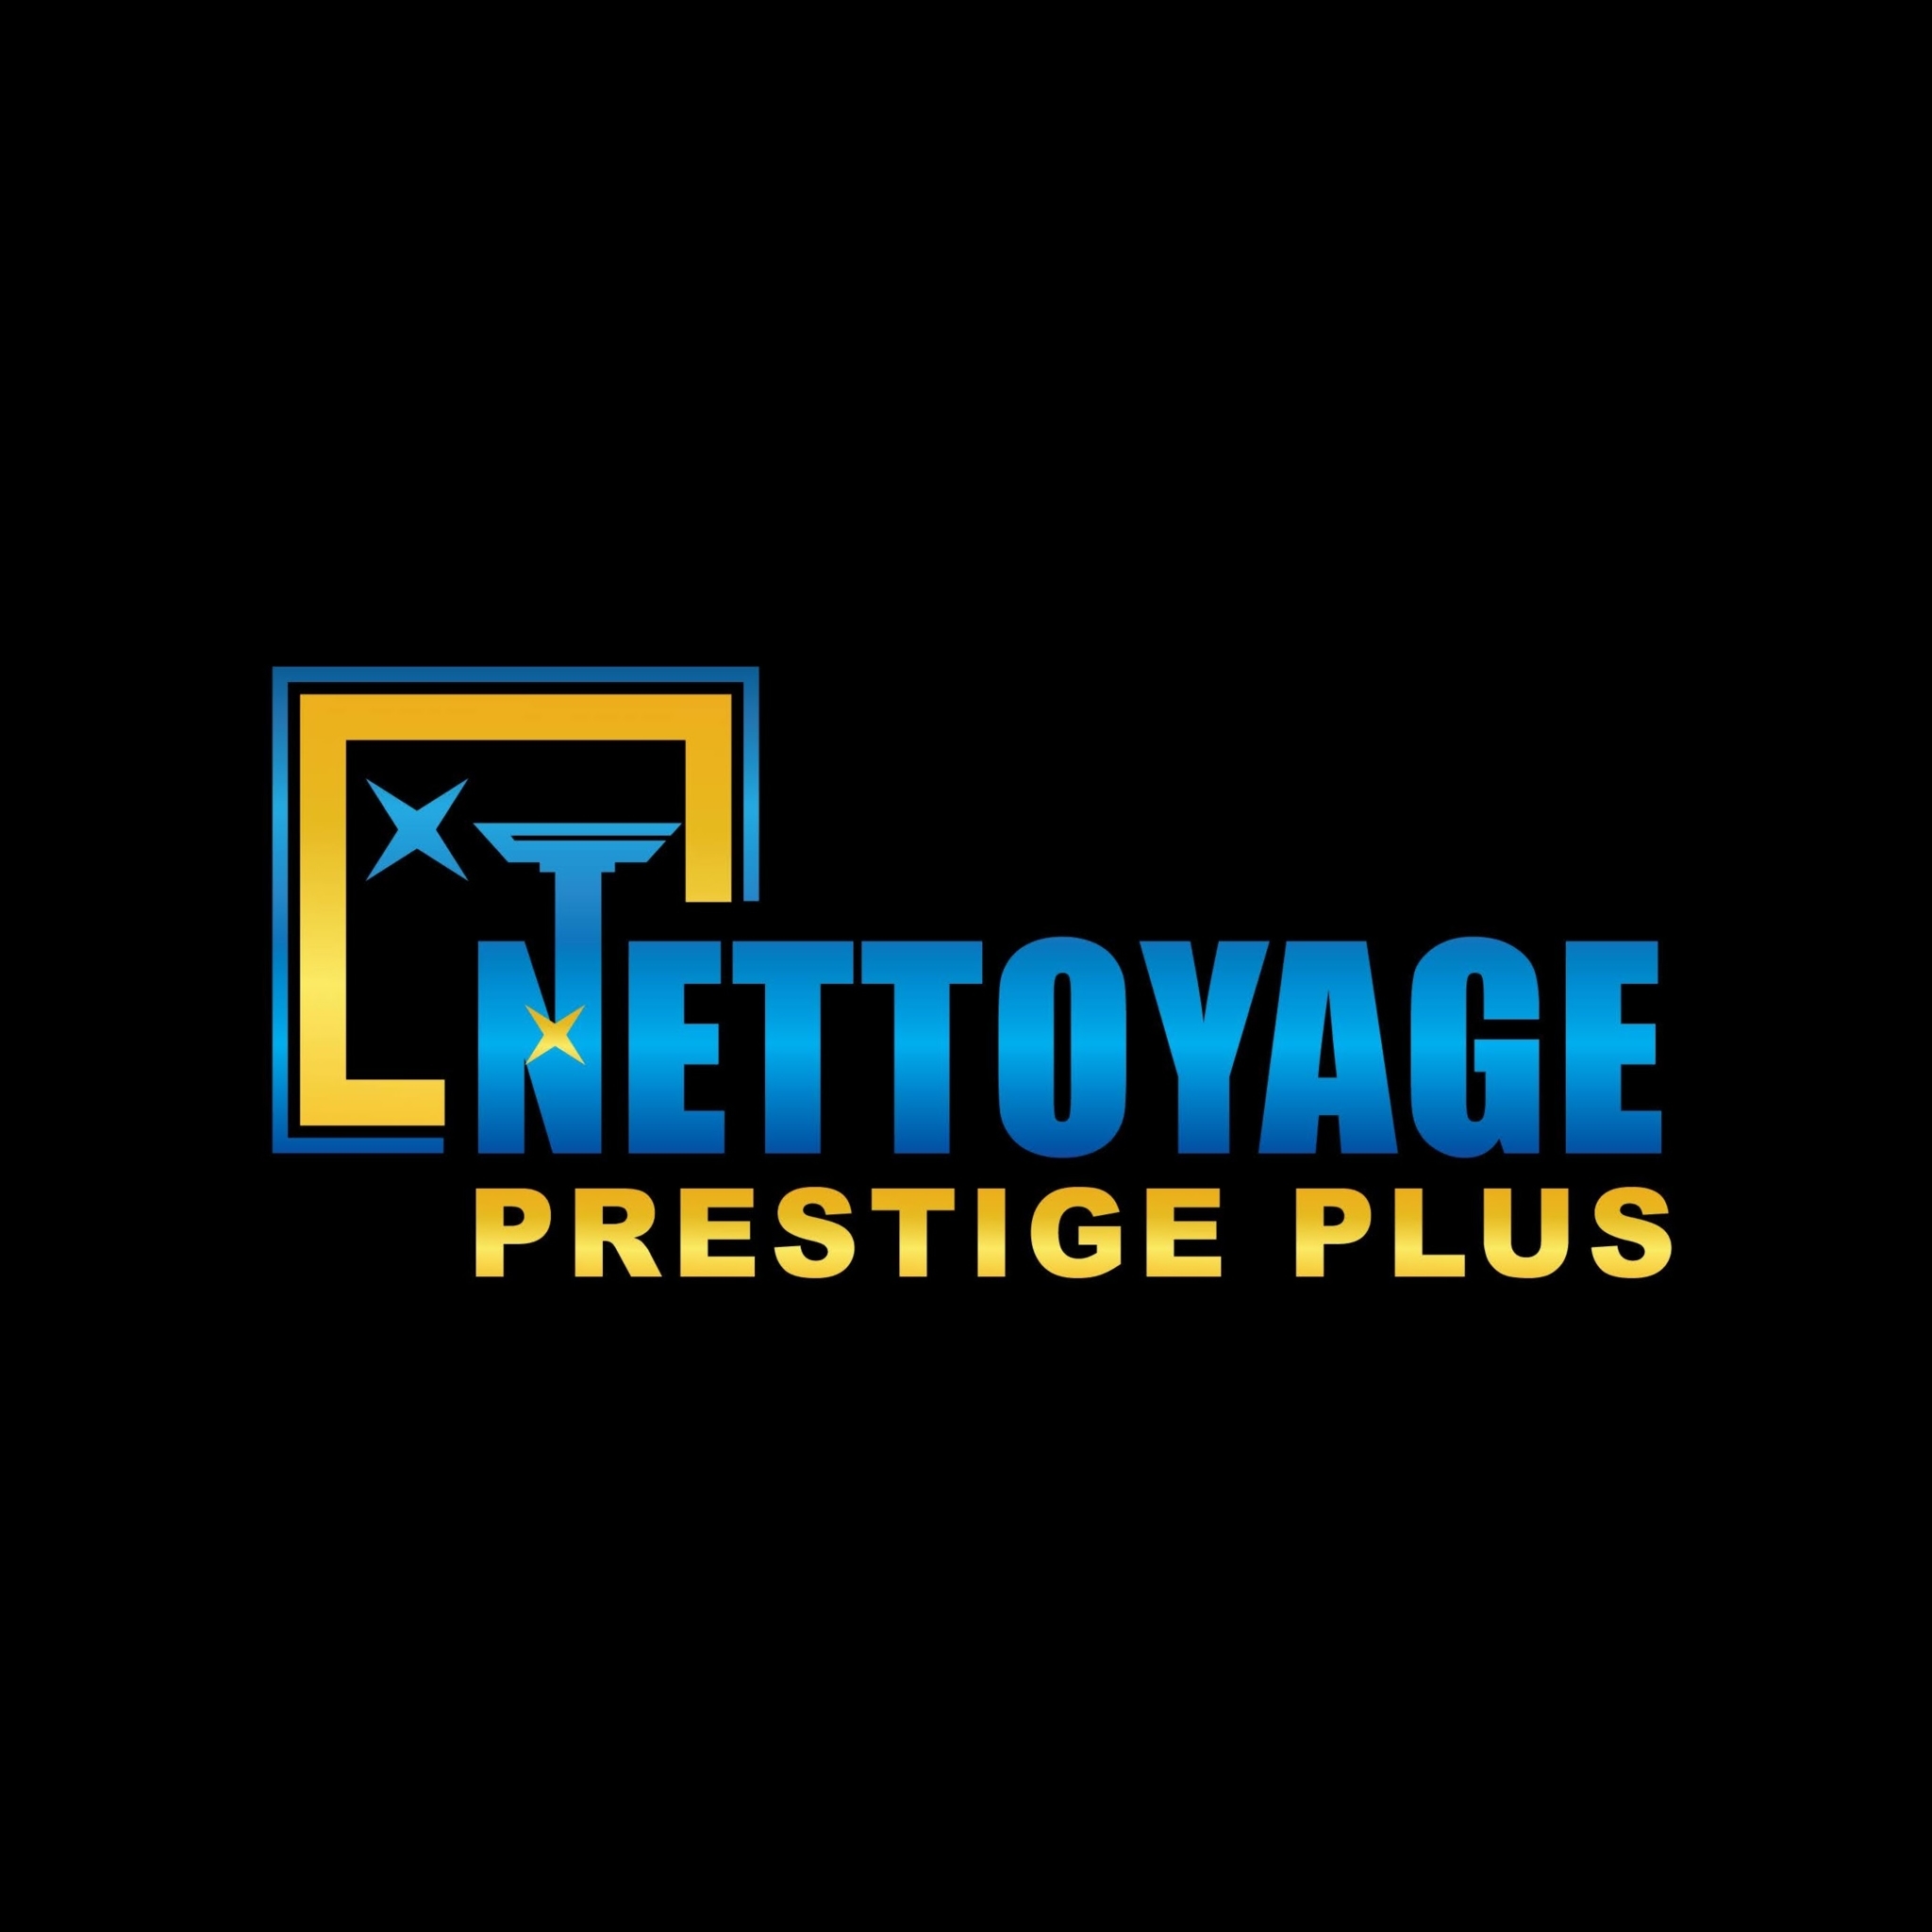 Nettoyage Prestige Plus - Window Cleaning Service